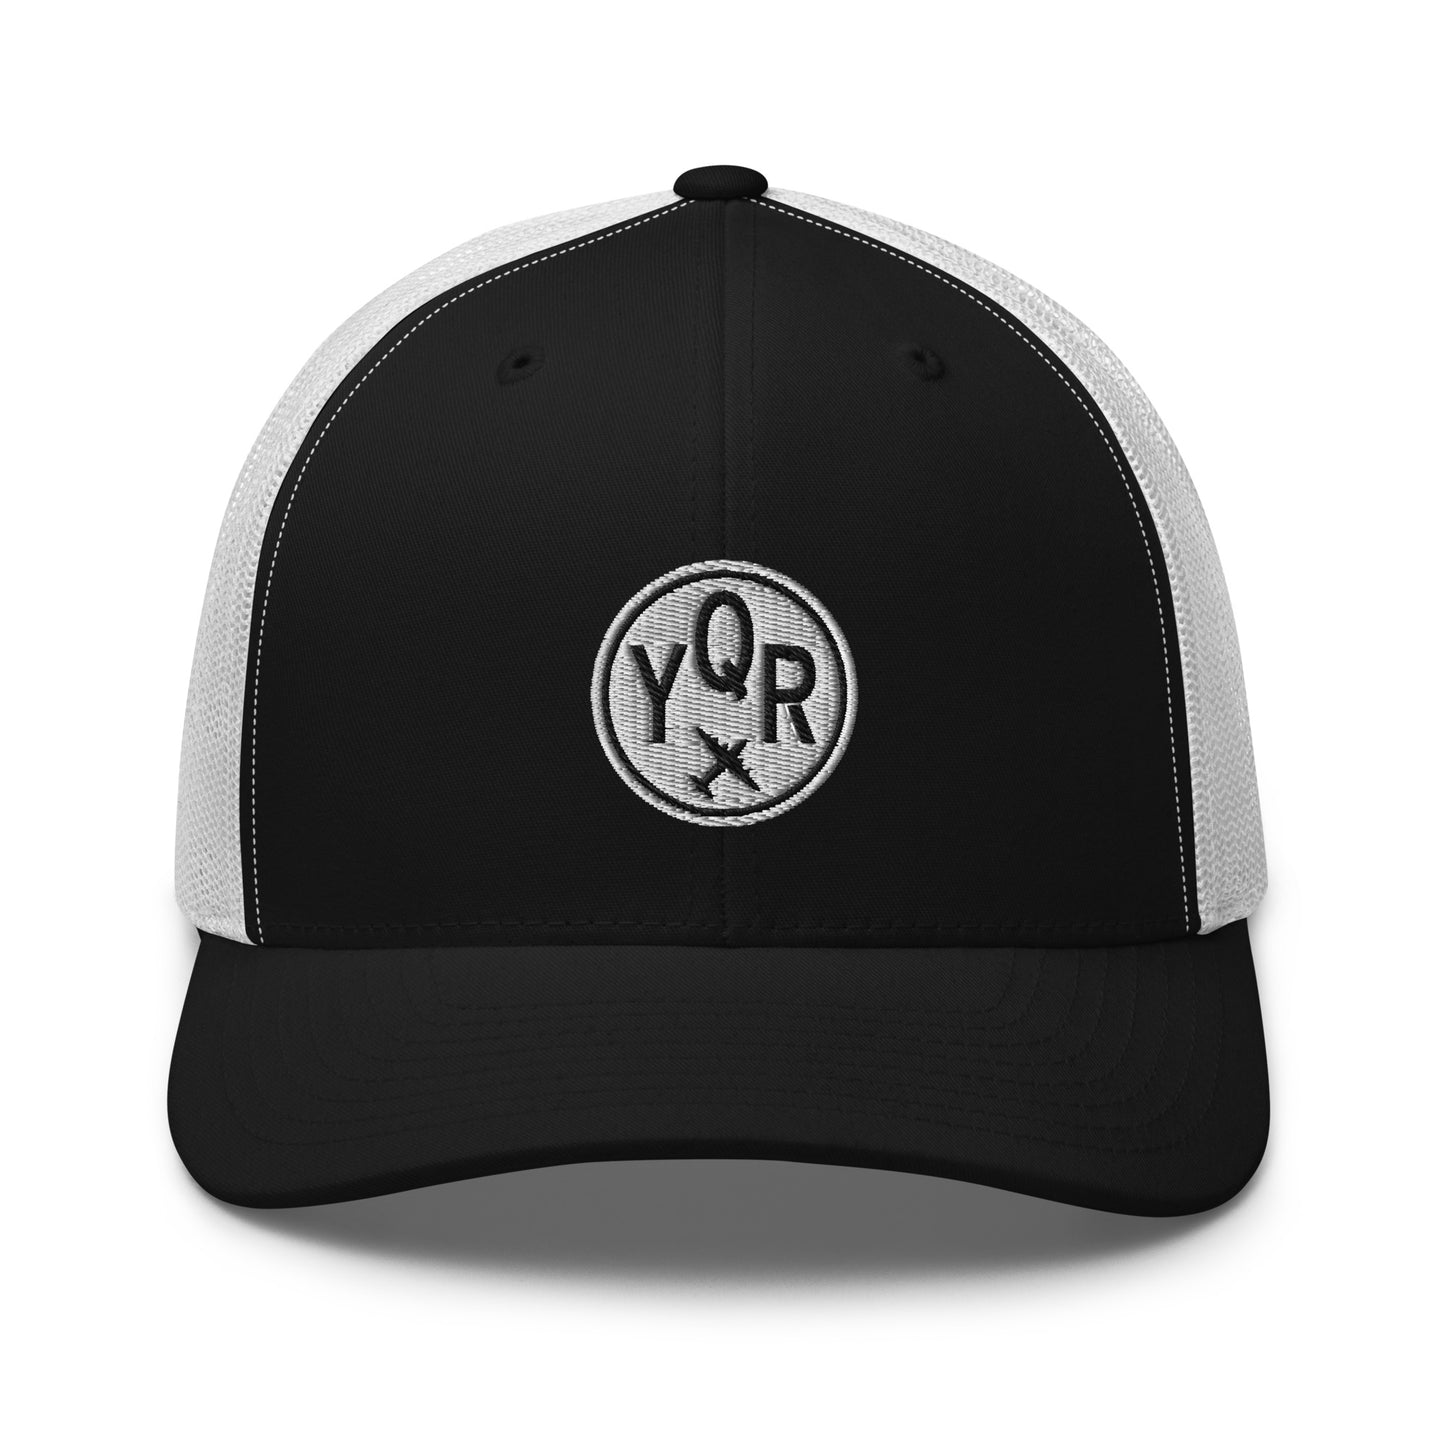 Roundel Trucker Hat - Black & White • YQR Regina • YHM Designs - Image 09